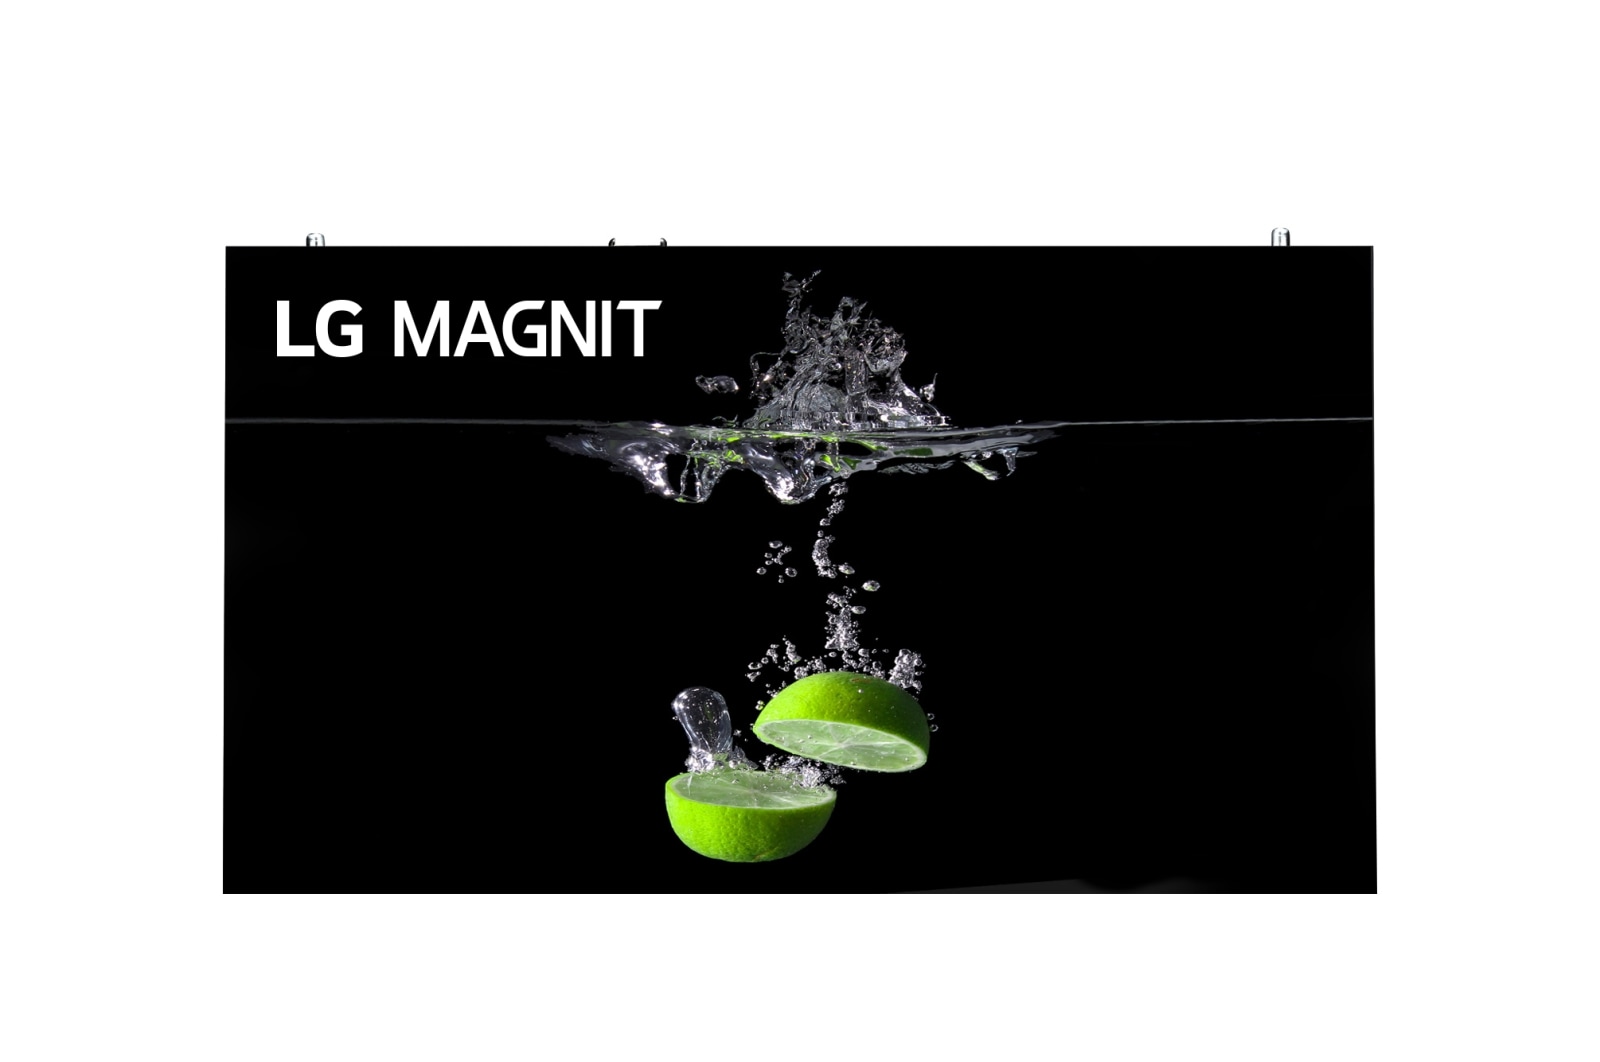 LG MAGNIT, LSAB009-N14